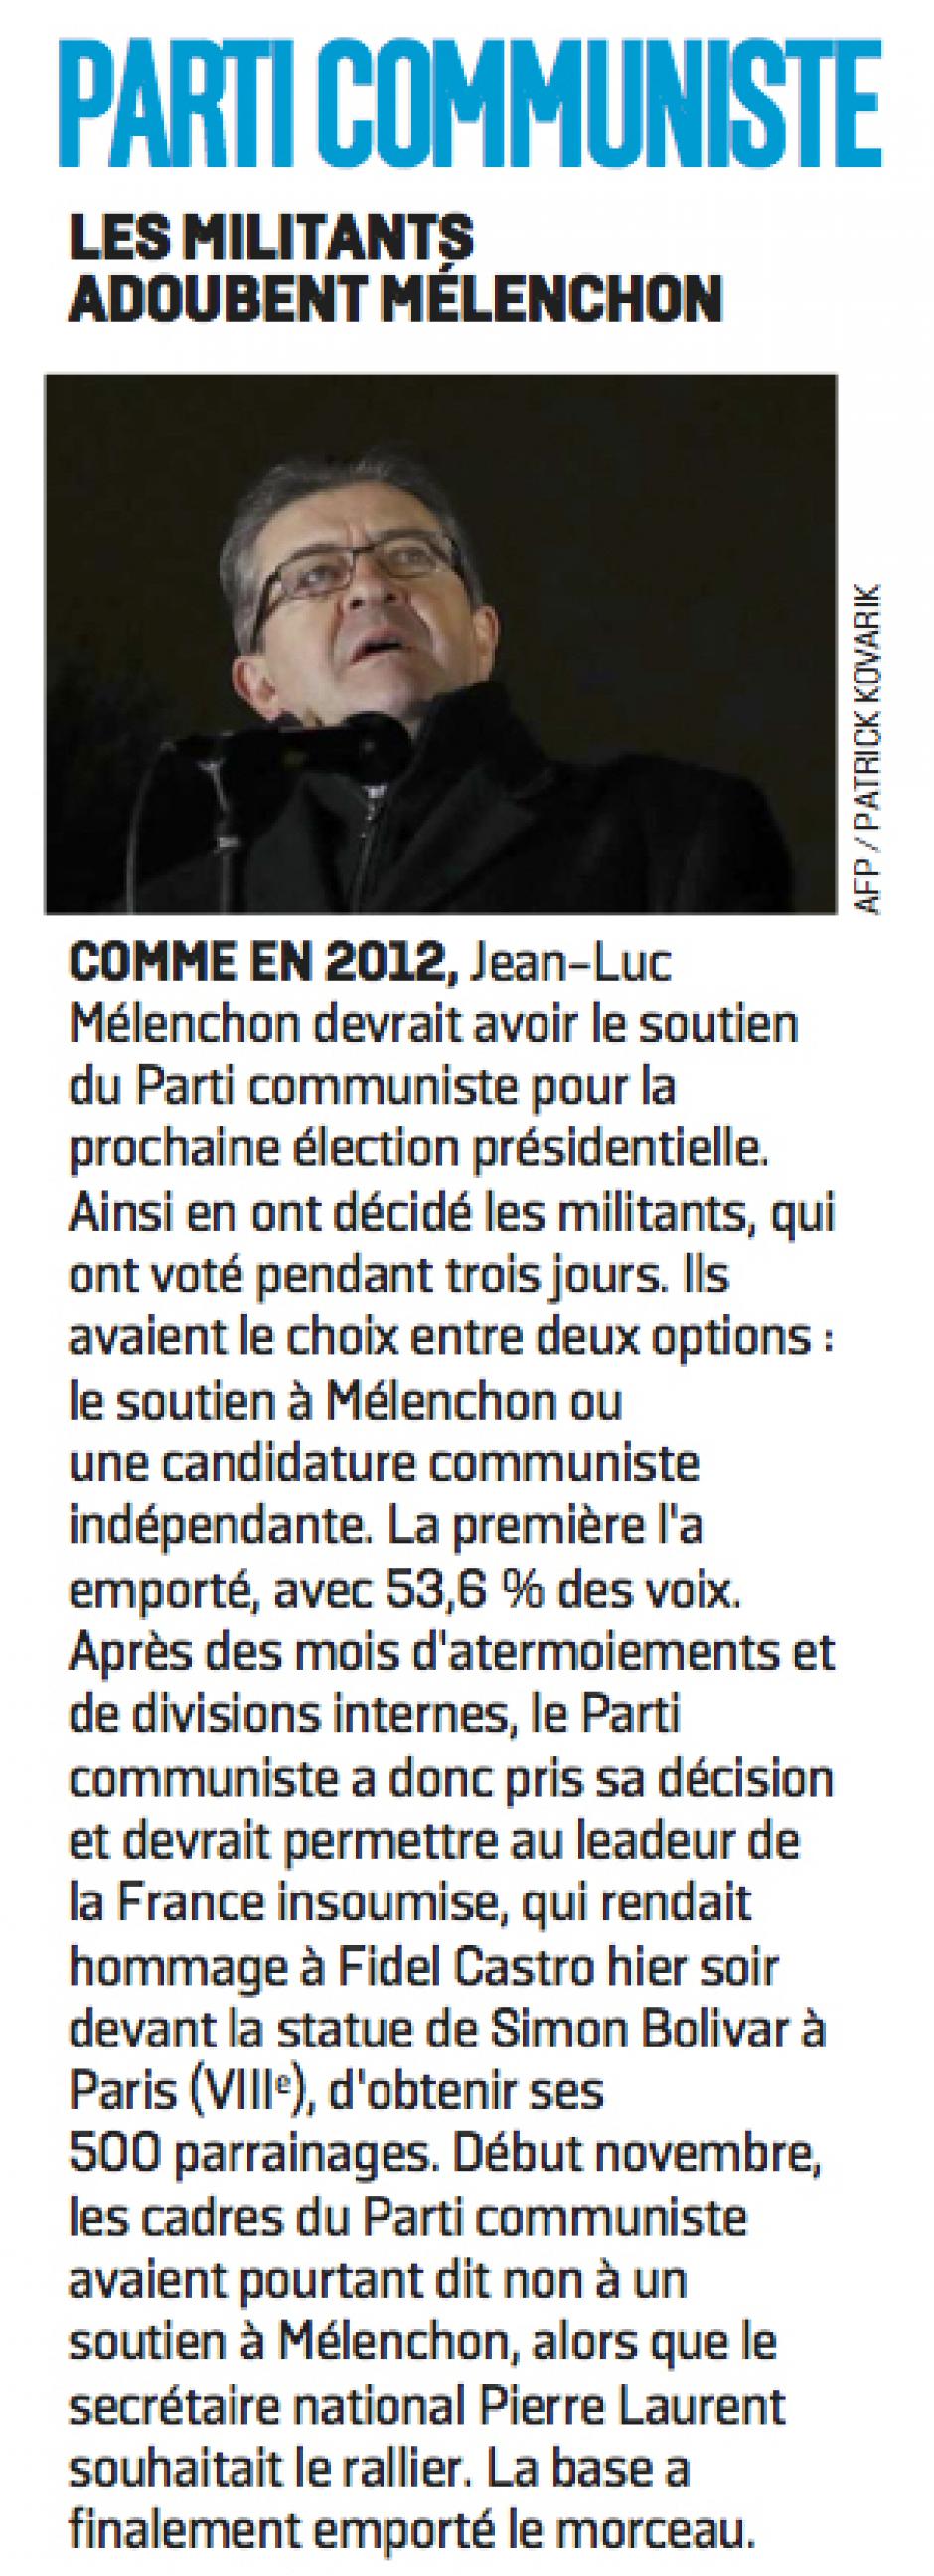 20161127-LeP-France-P2017-Parti communiste : les militants adoubent Mélenchon